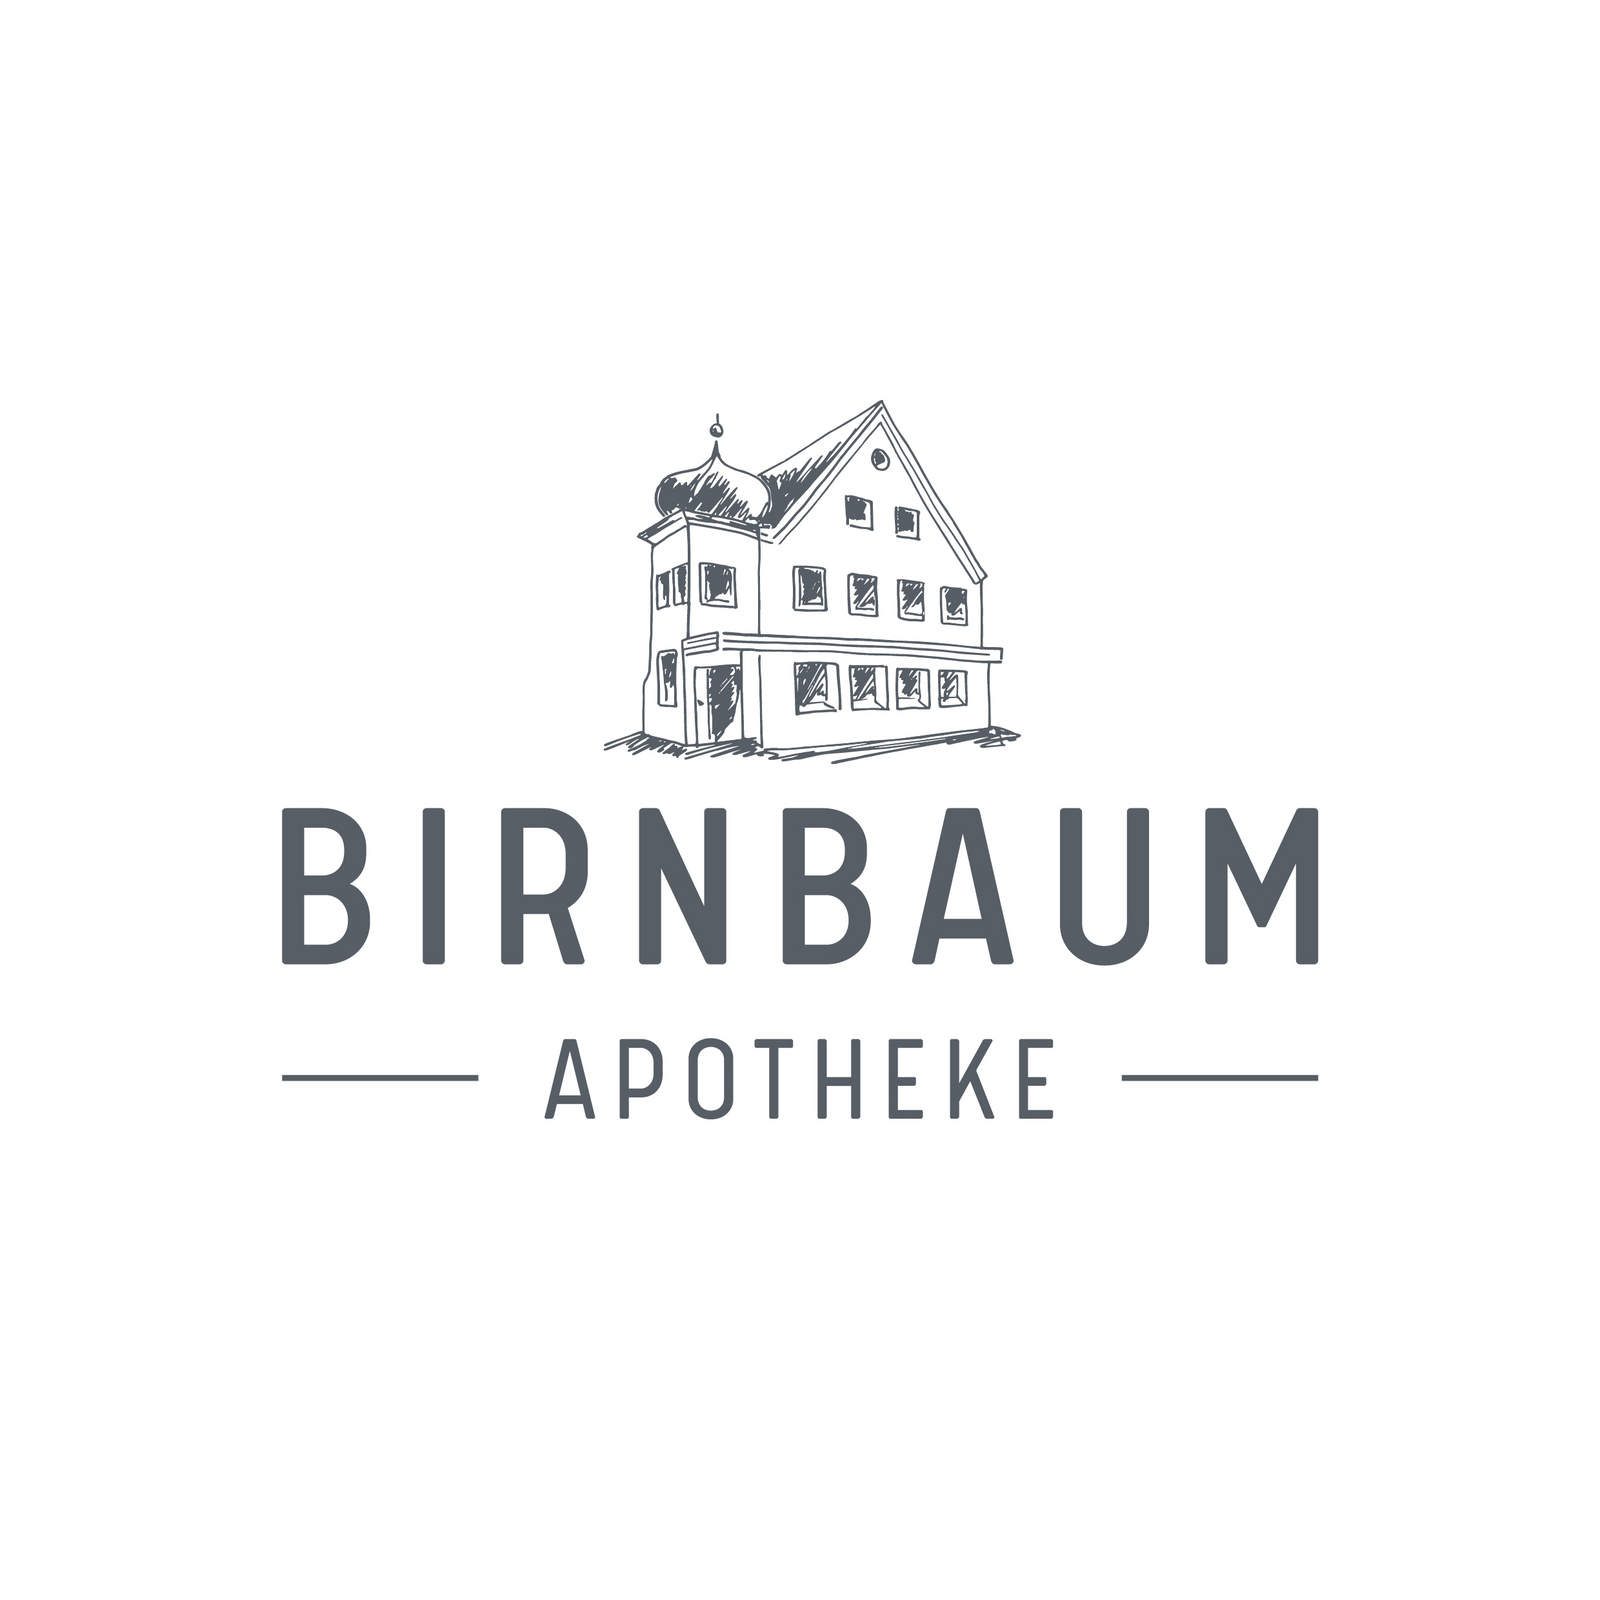 Birnbaum-Apotheke in Thannhausen in Schwaben - Logo